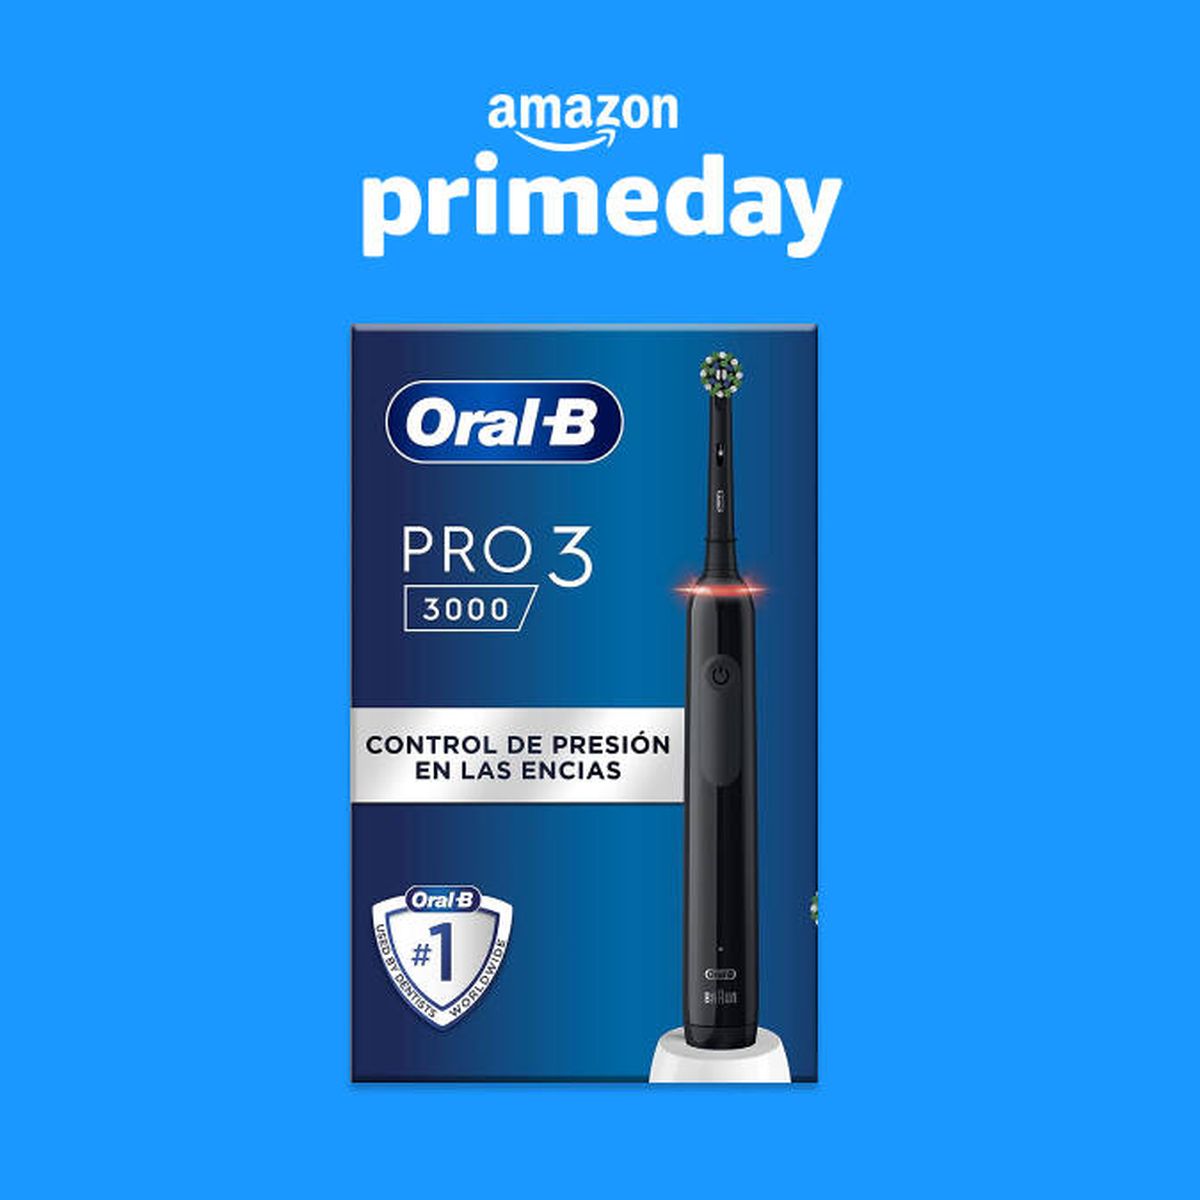 Oral-B PRO 3 3000: El cepillo eléctrico de alta calidad y precio accesible